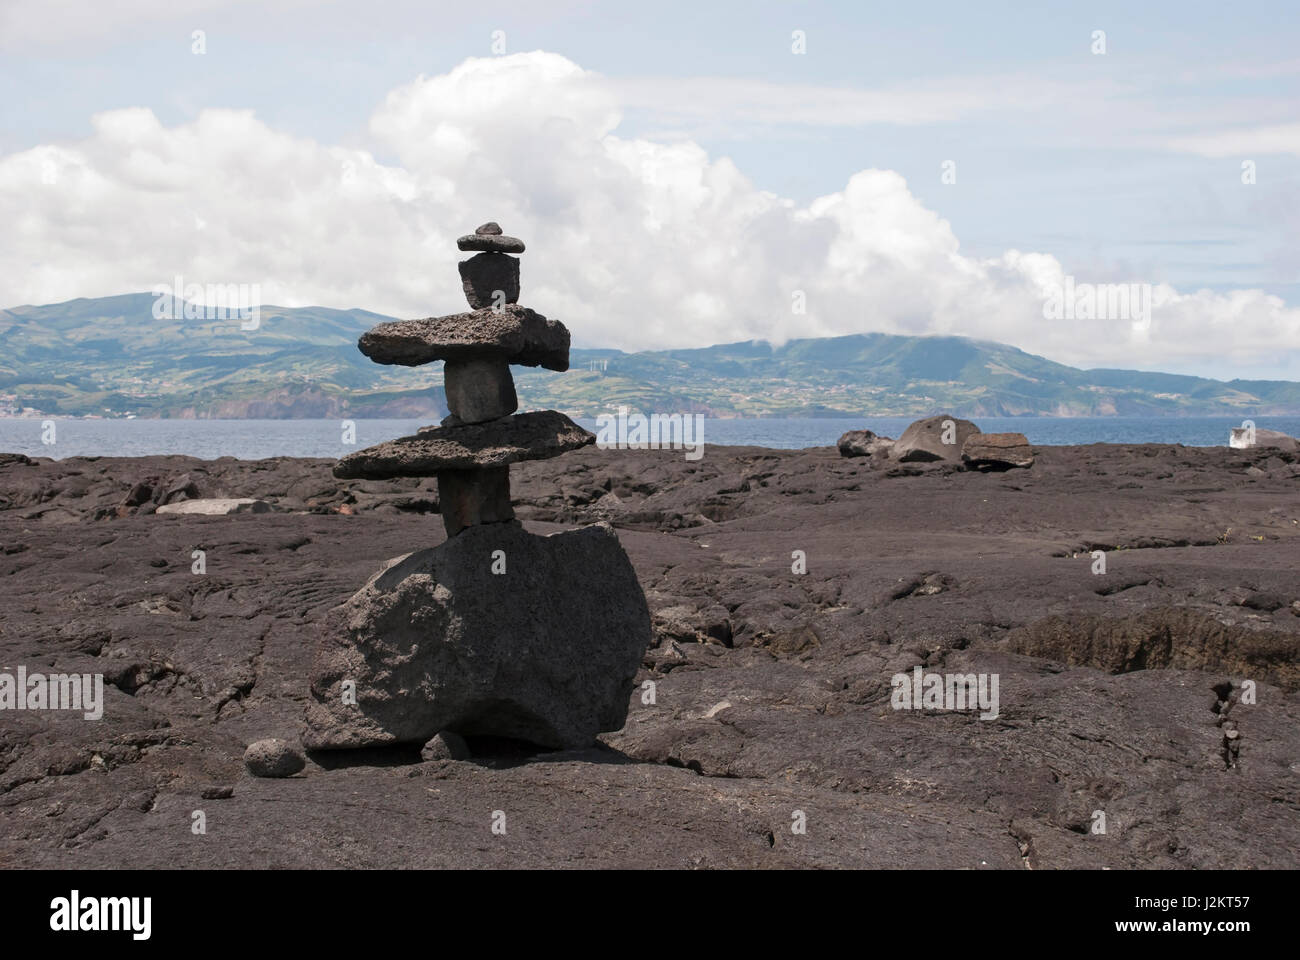 Sculpture en lave solide, paysage volcanique à l'île de Pico, Açores Banque D'Images